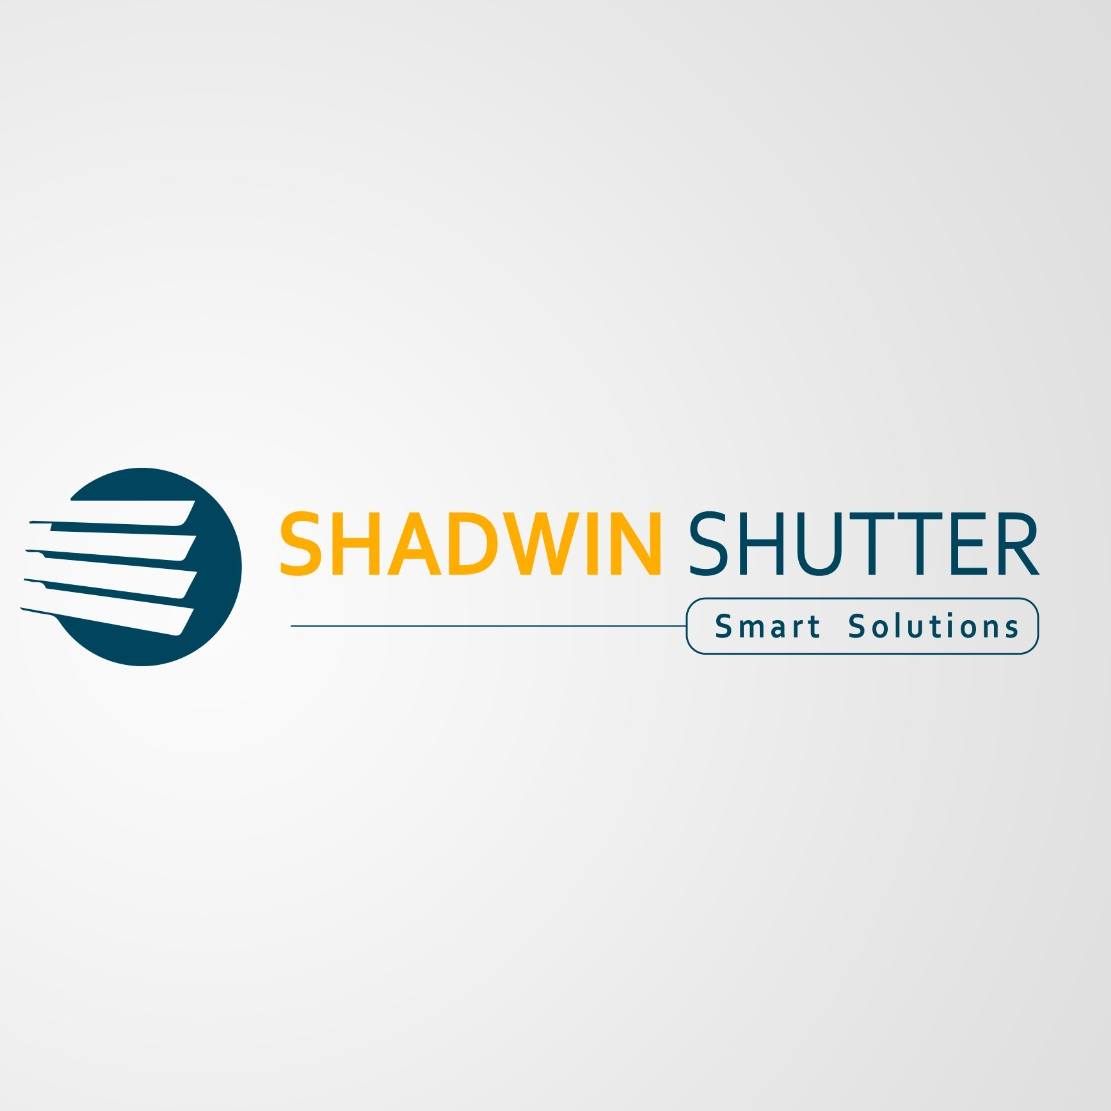 Shadwin Shutter